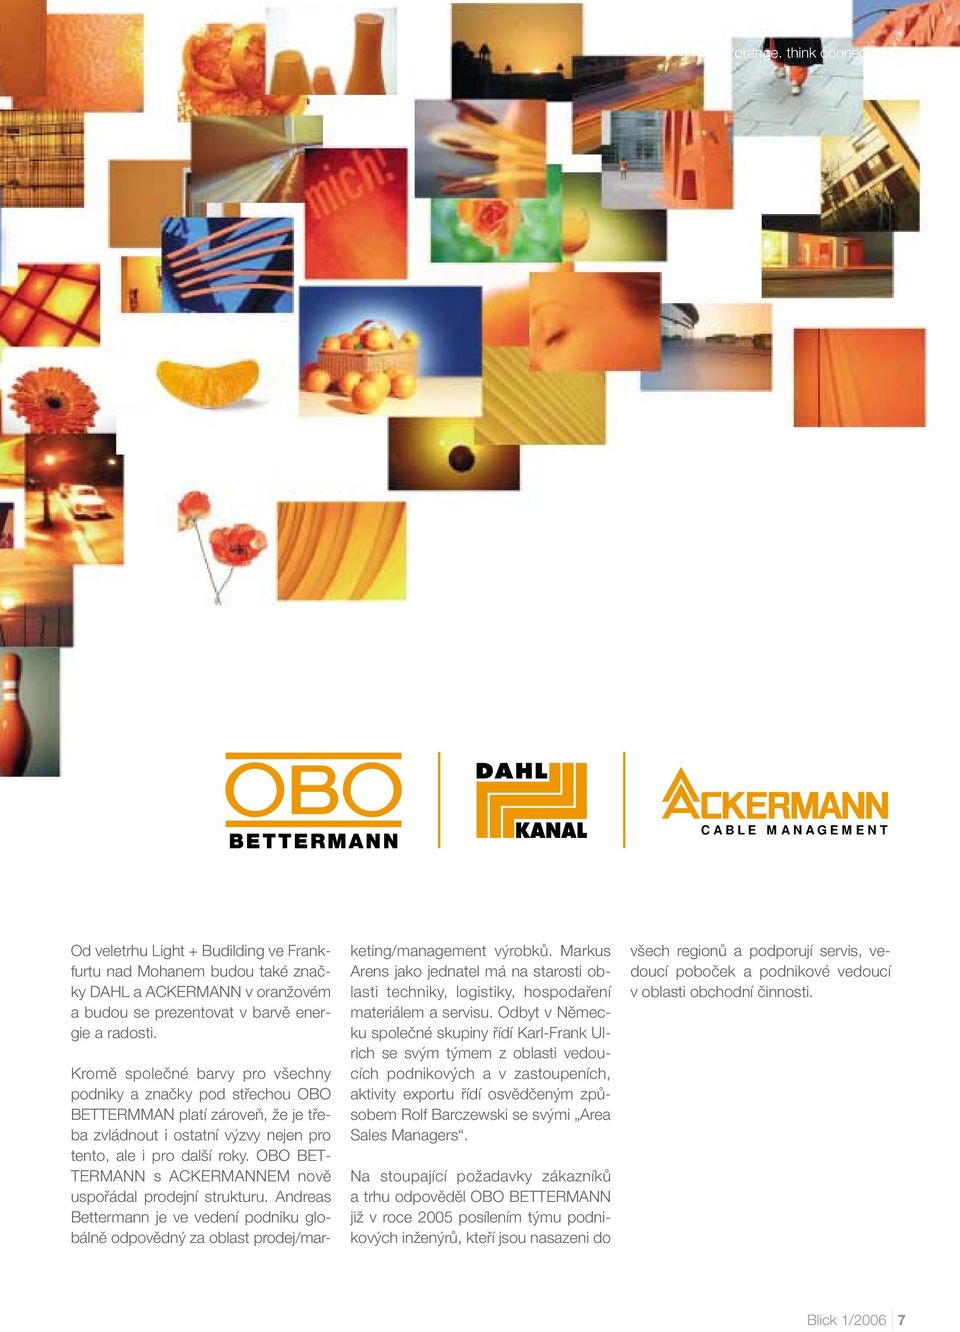 OBO BET- TERMANN s ACKERMANNEM novû uspofiádal prodejní strukturu. Andreas Bettermann je ve vedení podniku globálnû odpovûdn za oblast prodej/marketing/management v robkû.